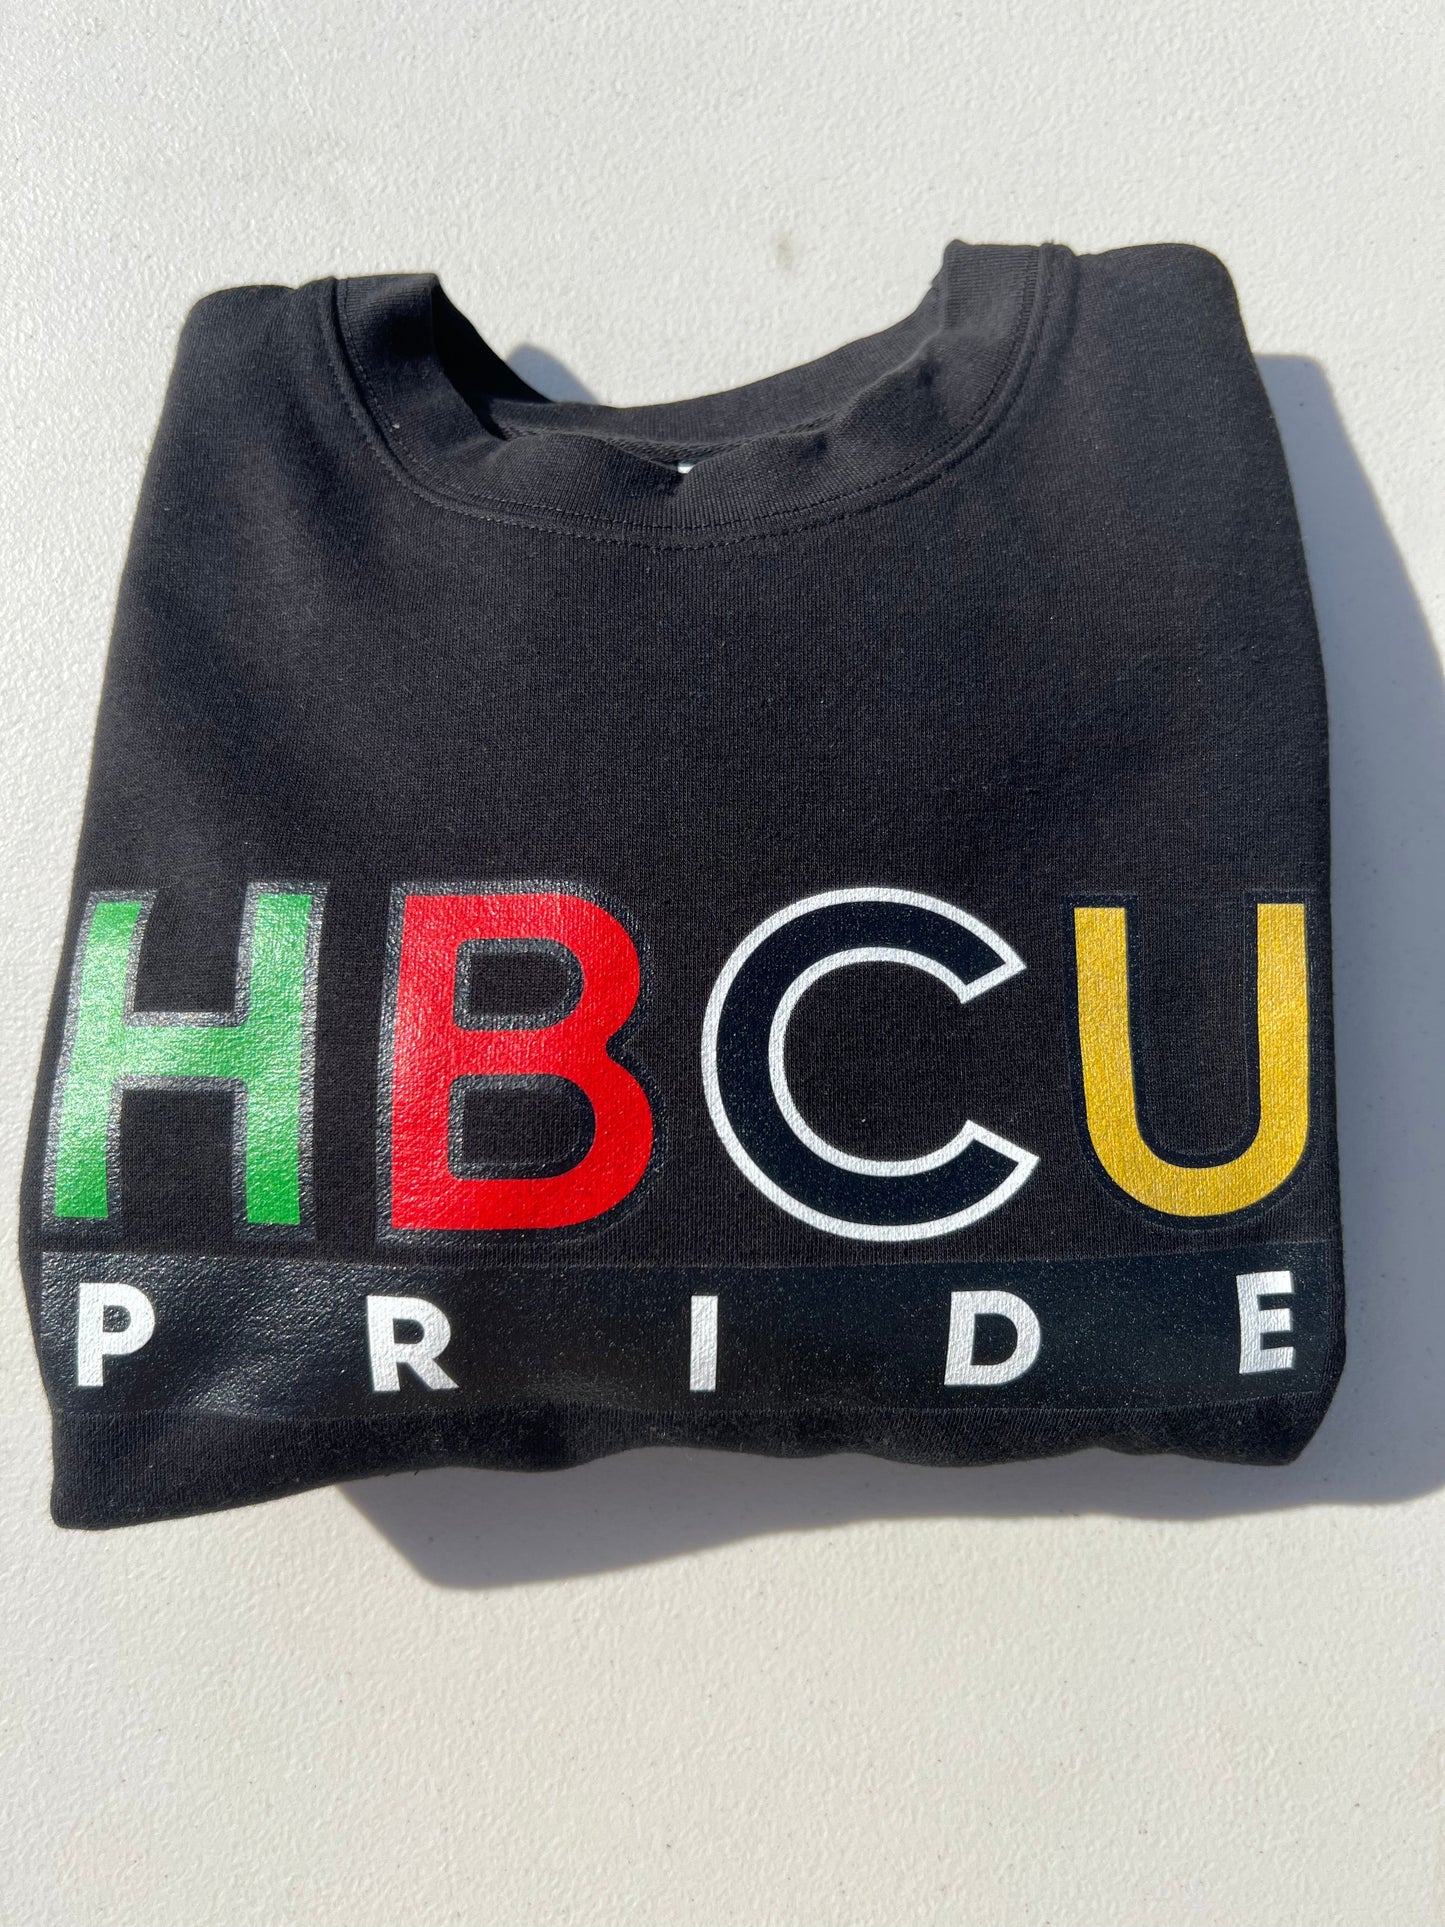 HBCU Pride Hoodie in Gold